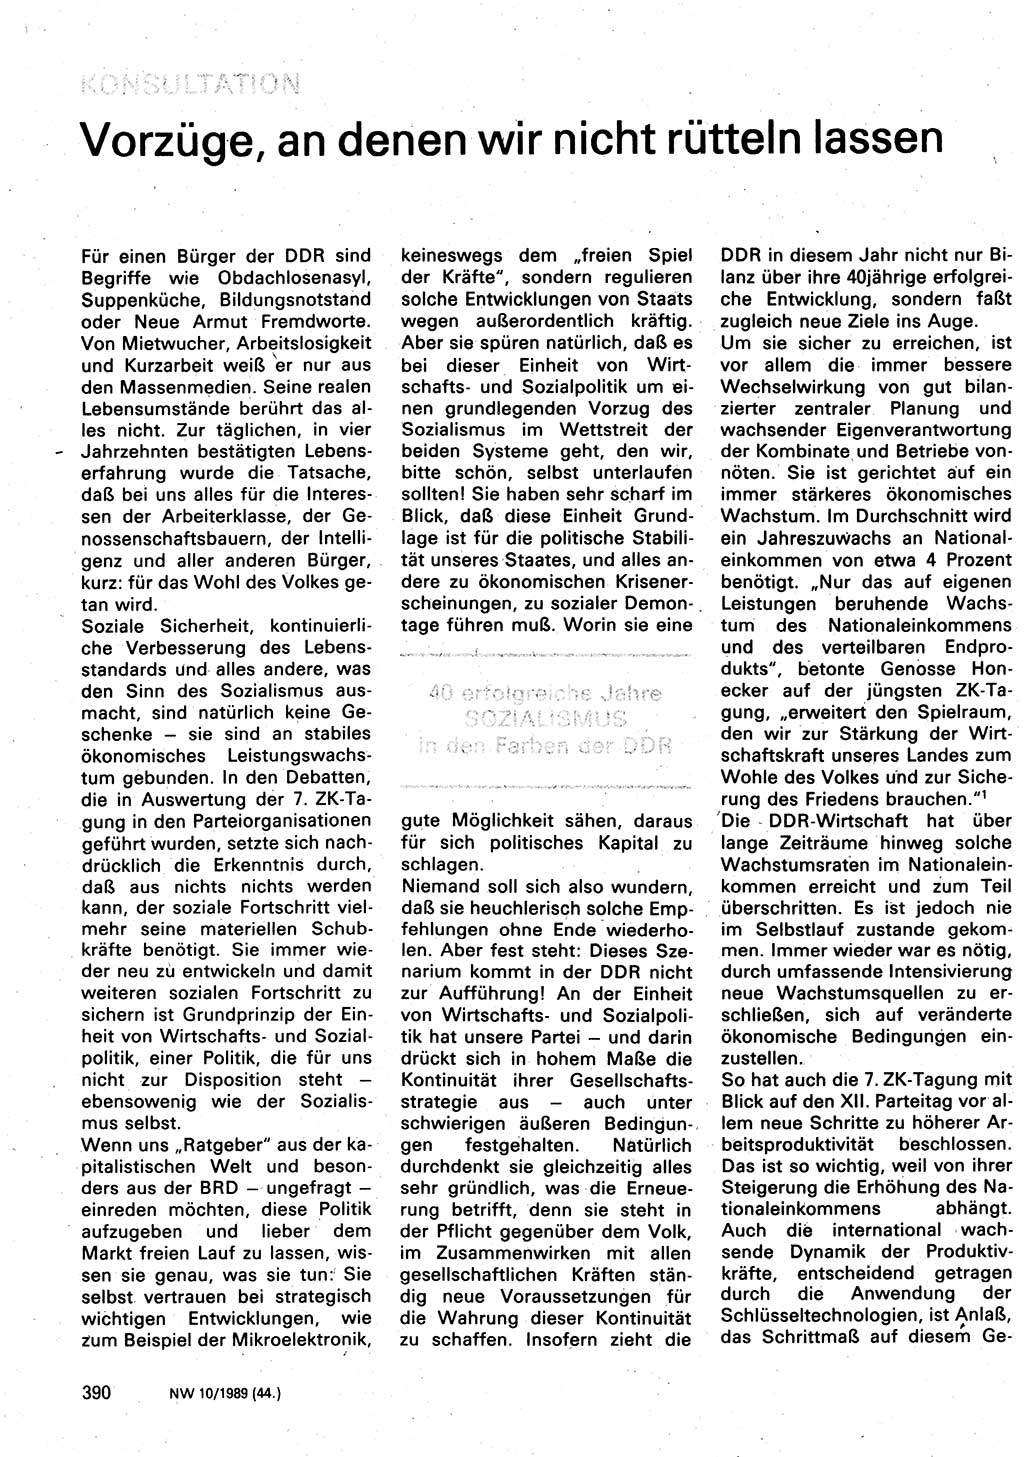 Neuer Weg (NW), Organ des Zentralkomitees (ZK) der SED (Sozialistische Einheitspartei Deutschlands) für Fragen des Parteilebens, 44. Jahrgang [Deutsche Demokratische Republik (DDR)] 1989, Seite 390 (NW ZK SED DDR 1989, S. 390)